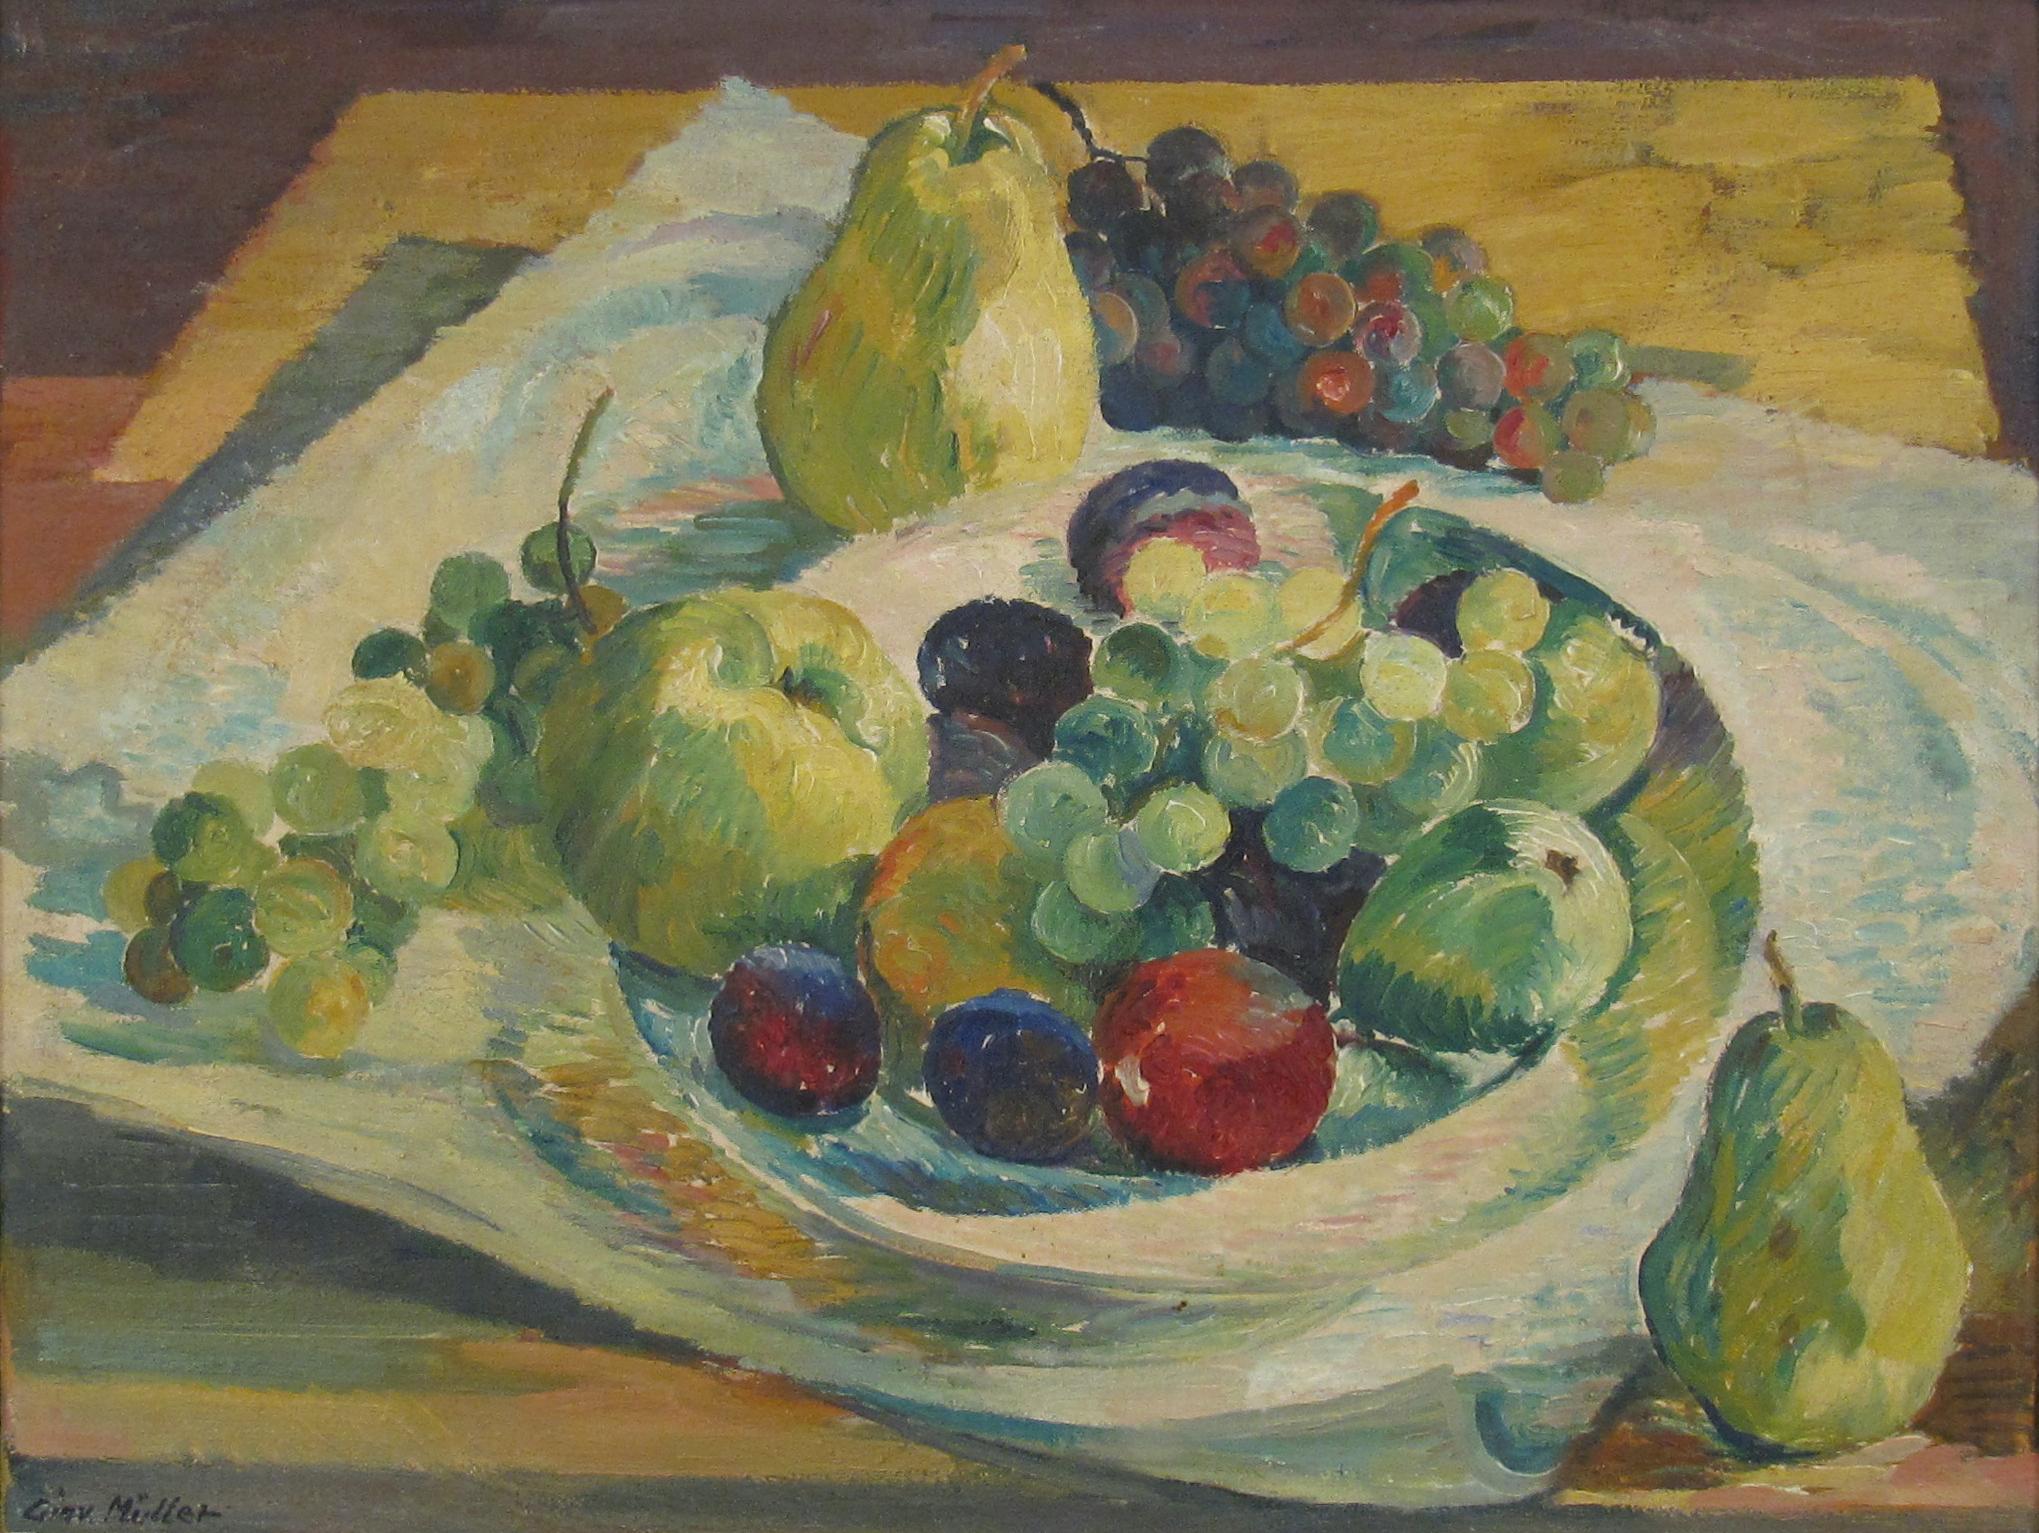 Nature morte de fruits dans un bol - Post-impressionnisme Painting par Giovanni Müller